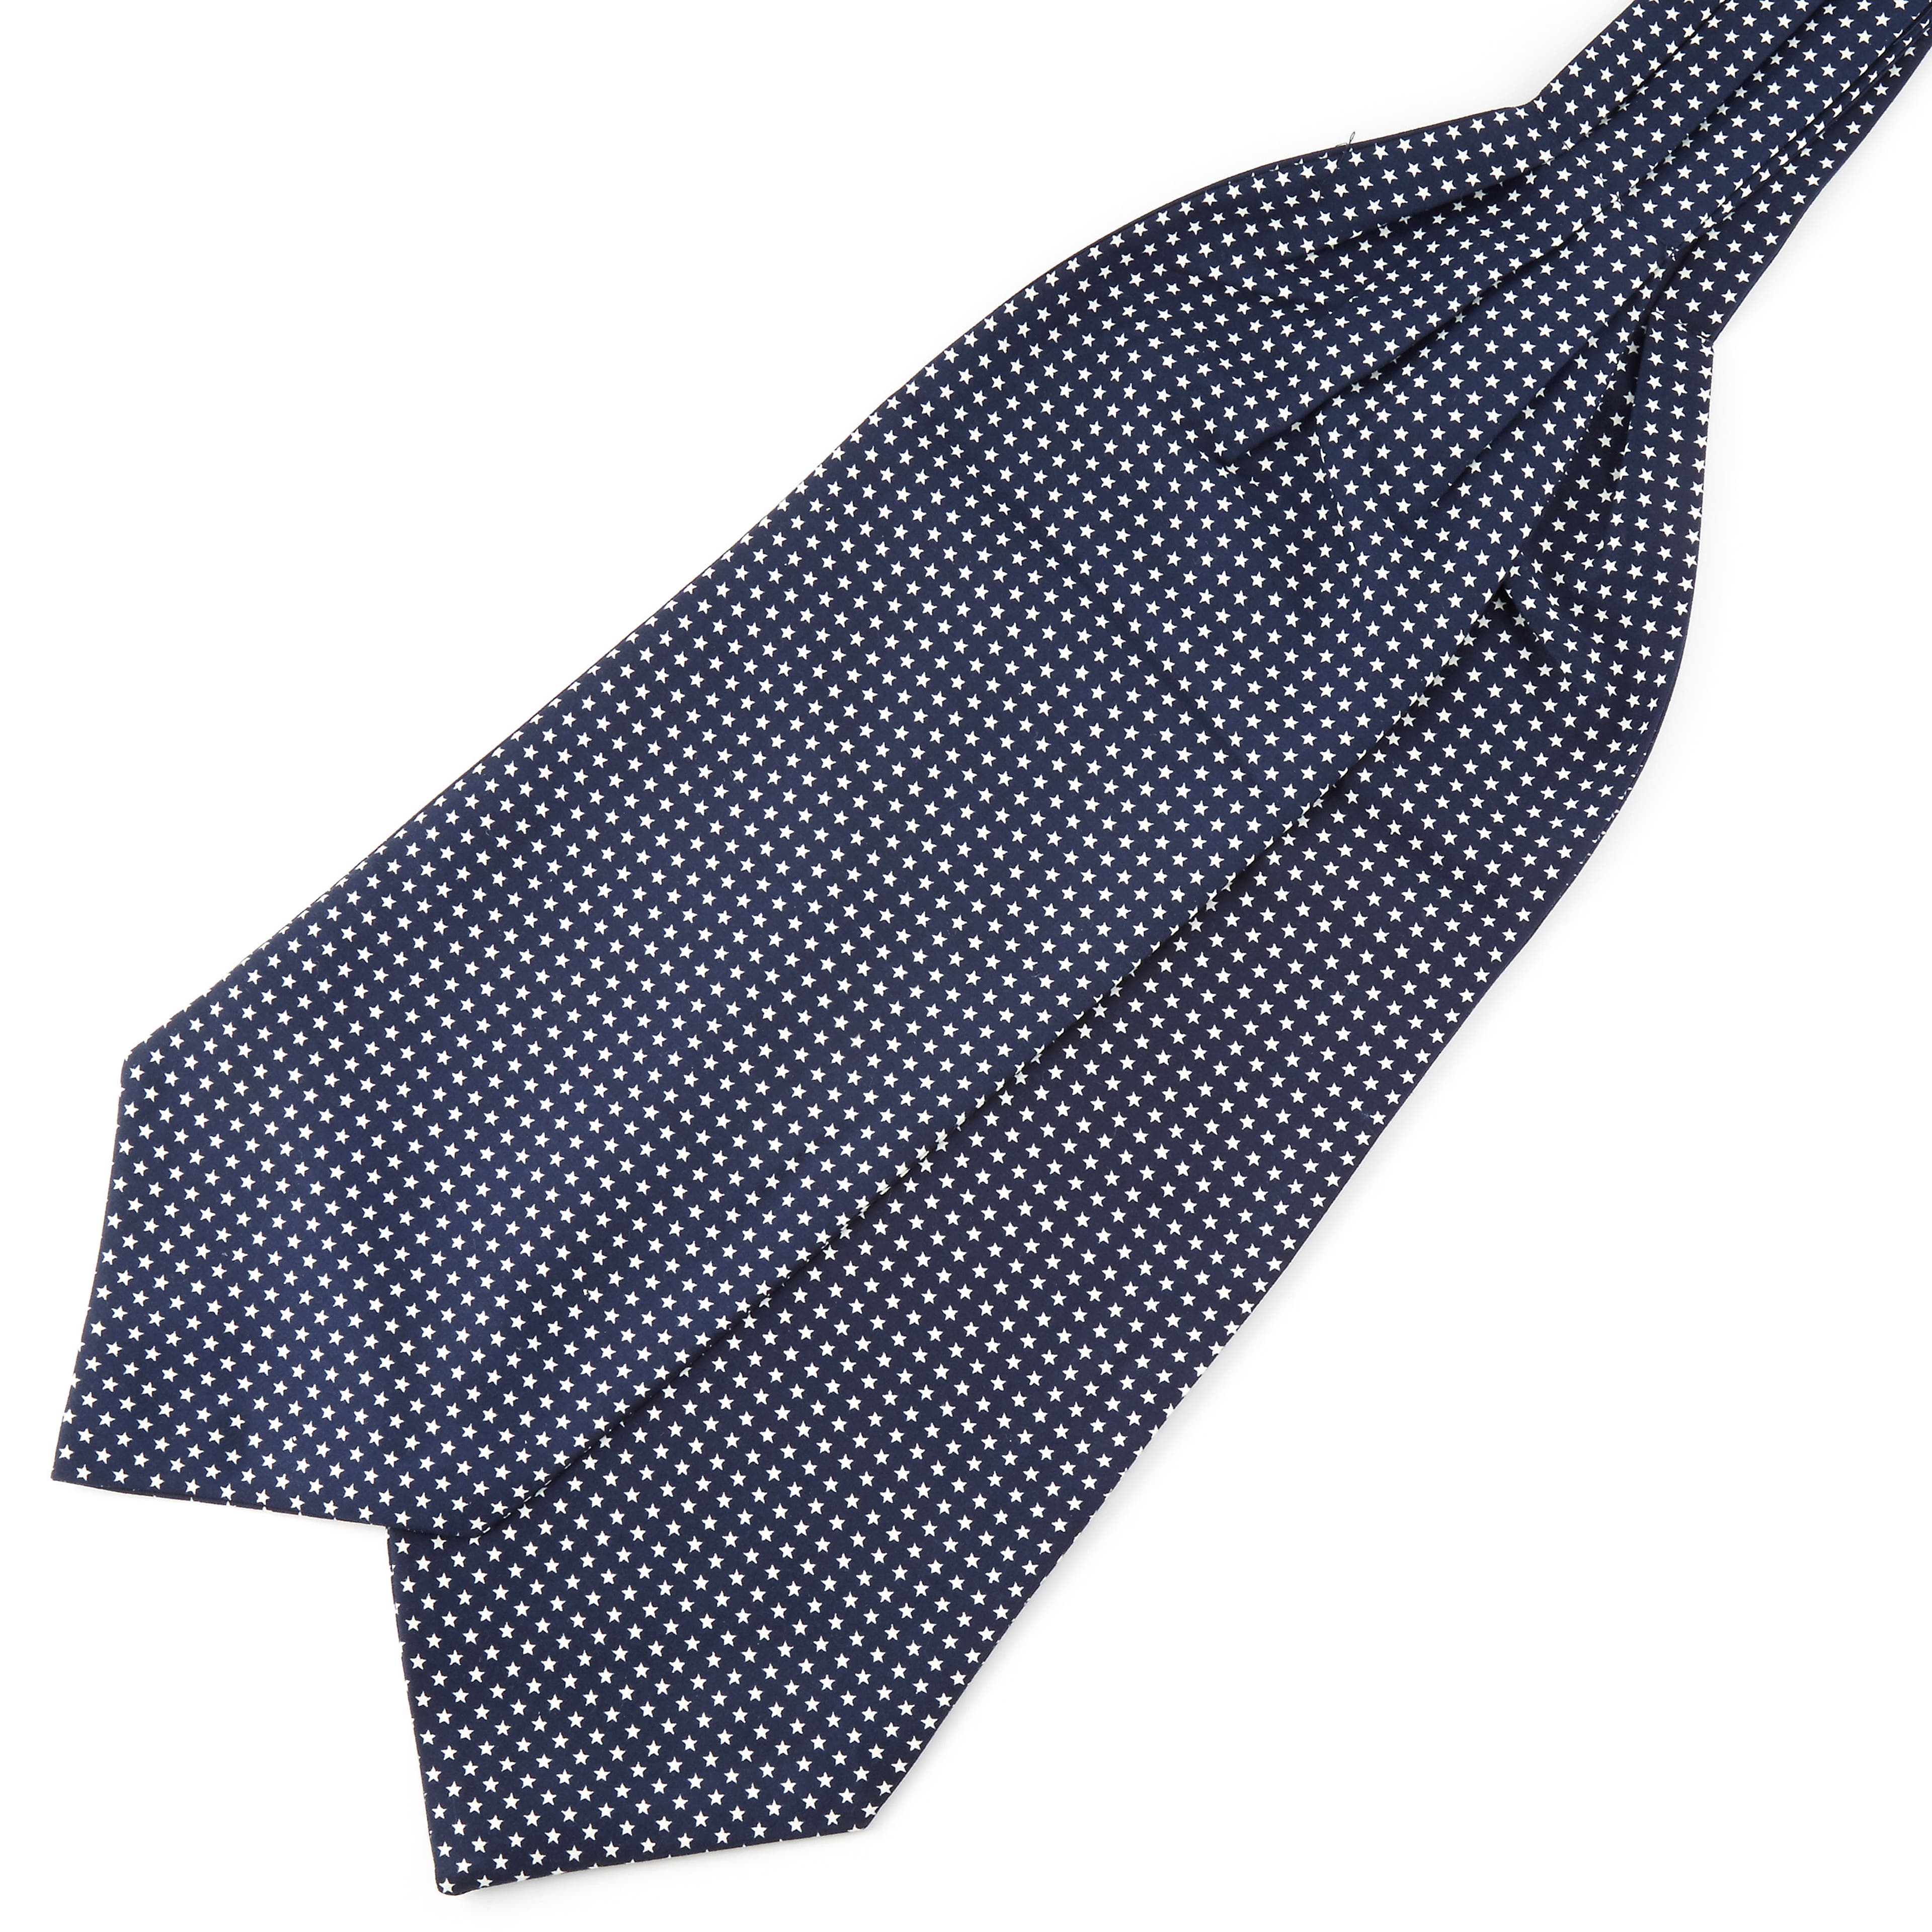 Námořnicky modrá polyesterová kravatová šála Askot s hvězdičkami 